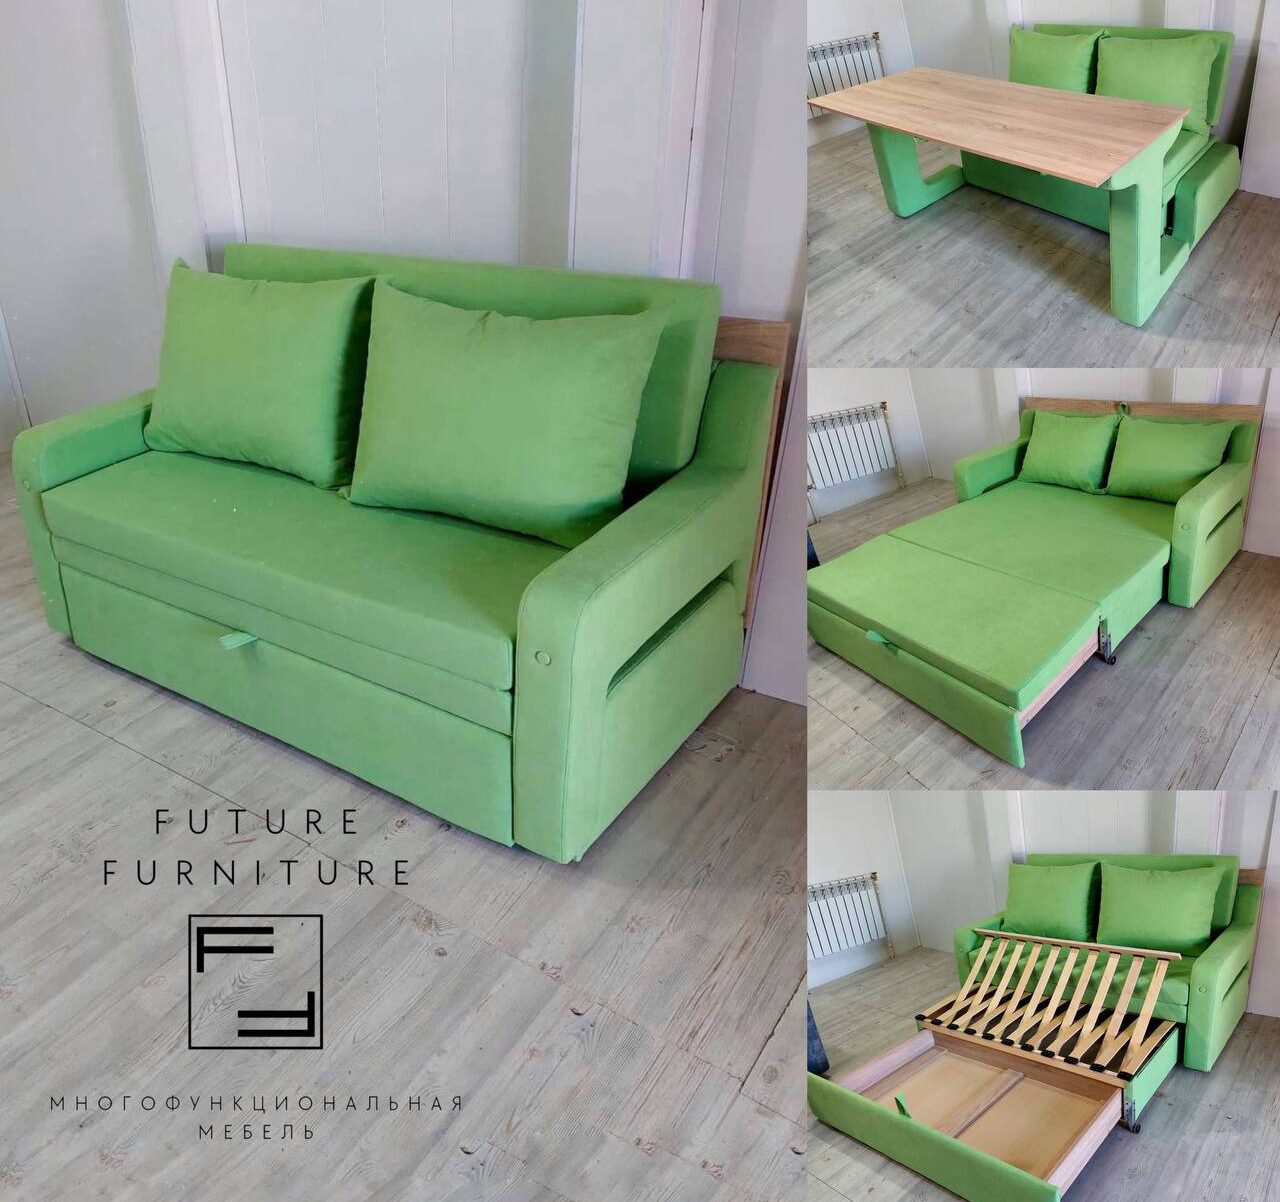 Диван трансформер 3в1 - стол, диван, кровать. Купить на официальном сайте  производителя Future Furniture! Лучшая мебель, богатая гамма цветов диванов  и оттенков! Индивидуальные проекты!